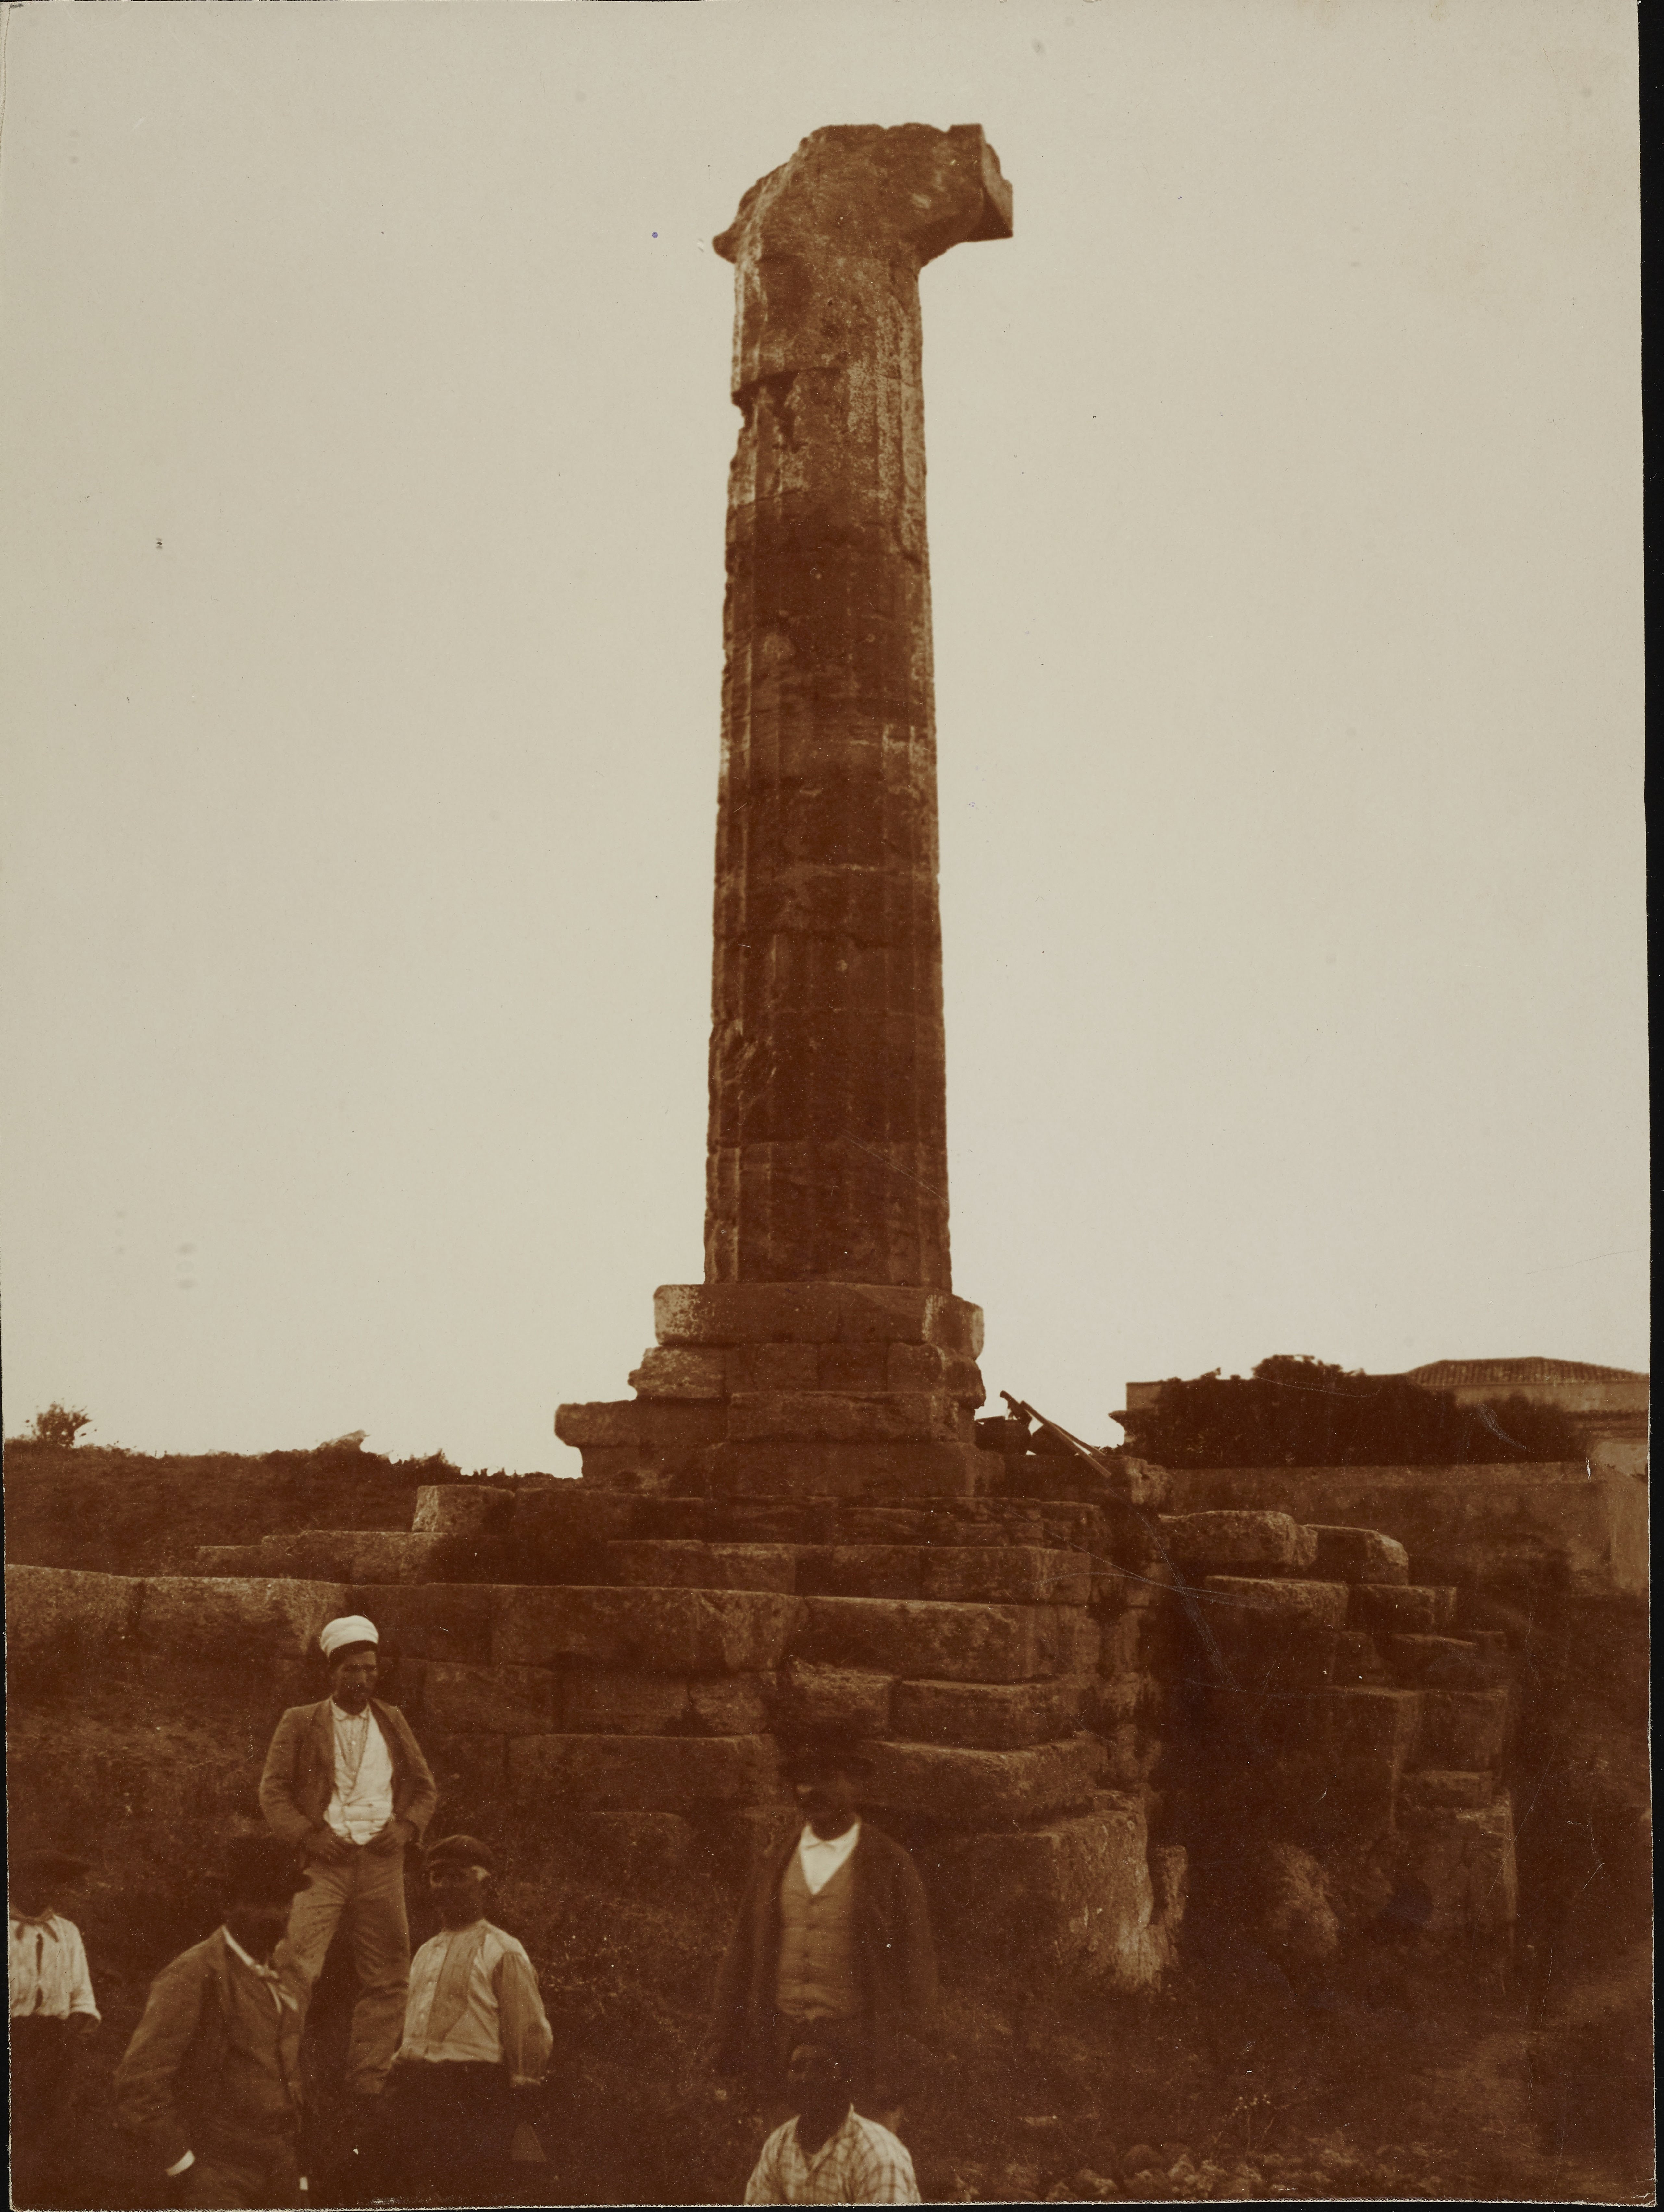 Fotografo non identificato, Crotone, Capo Colonna - Tempio di Hera Lacinia, ultima colonna rimasta in piedi, 1901-1925, carbone, MPI308844